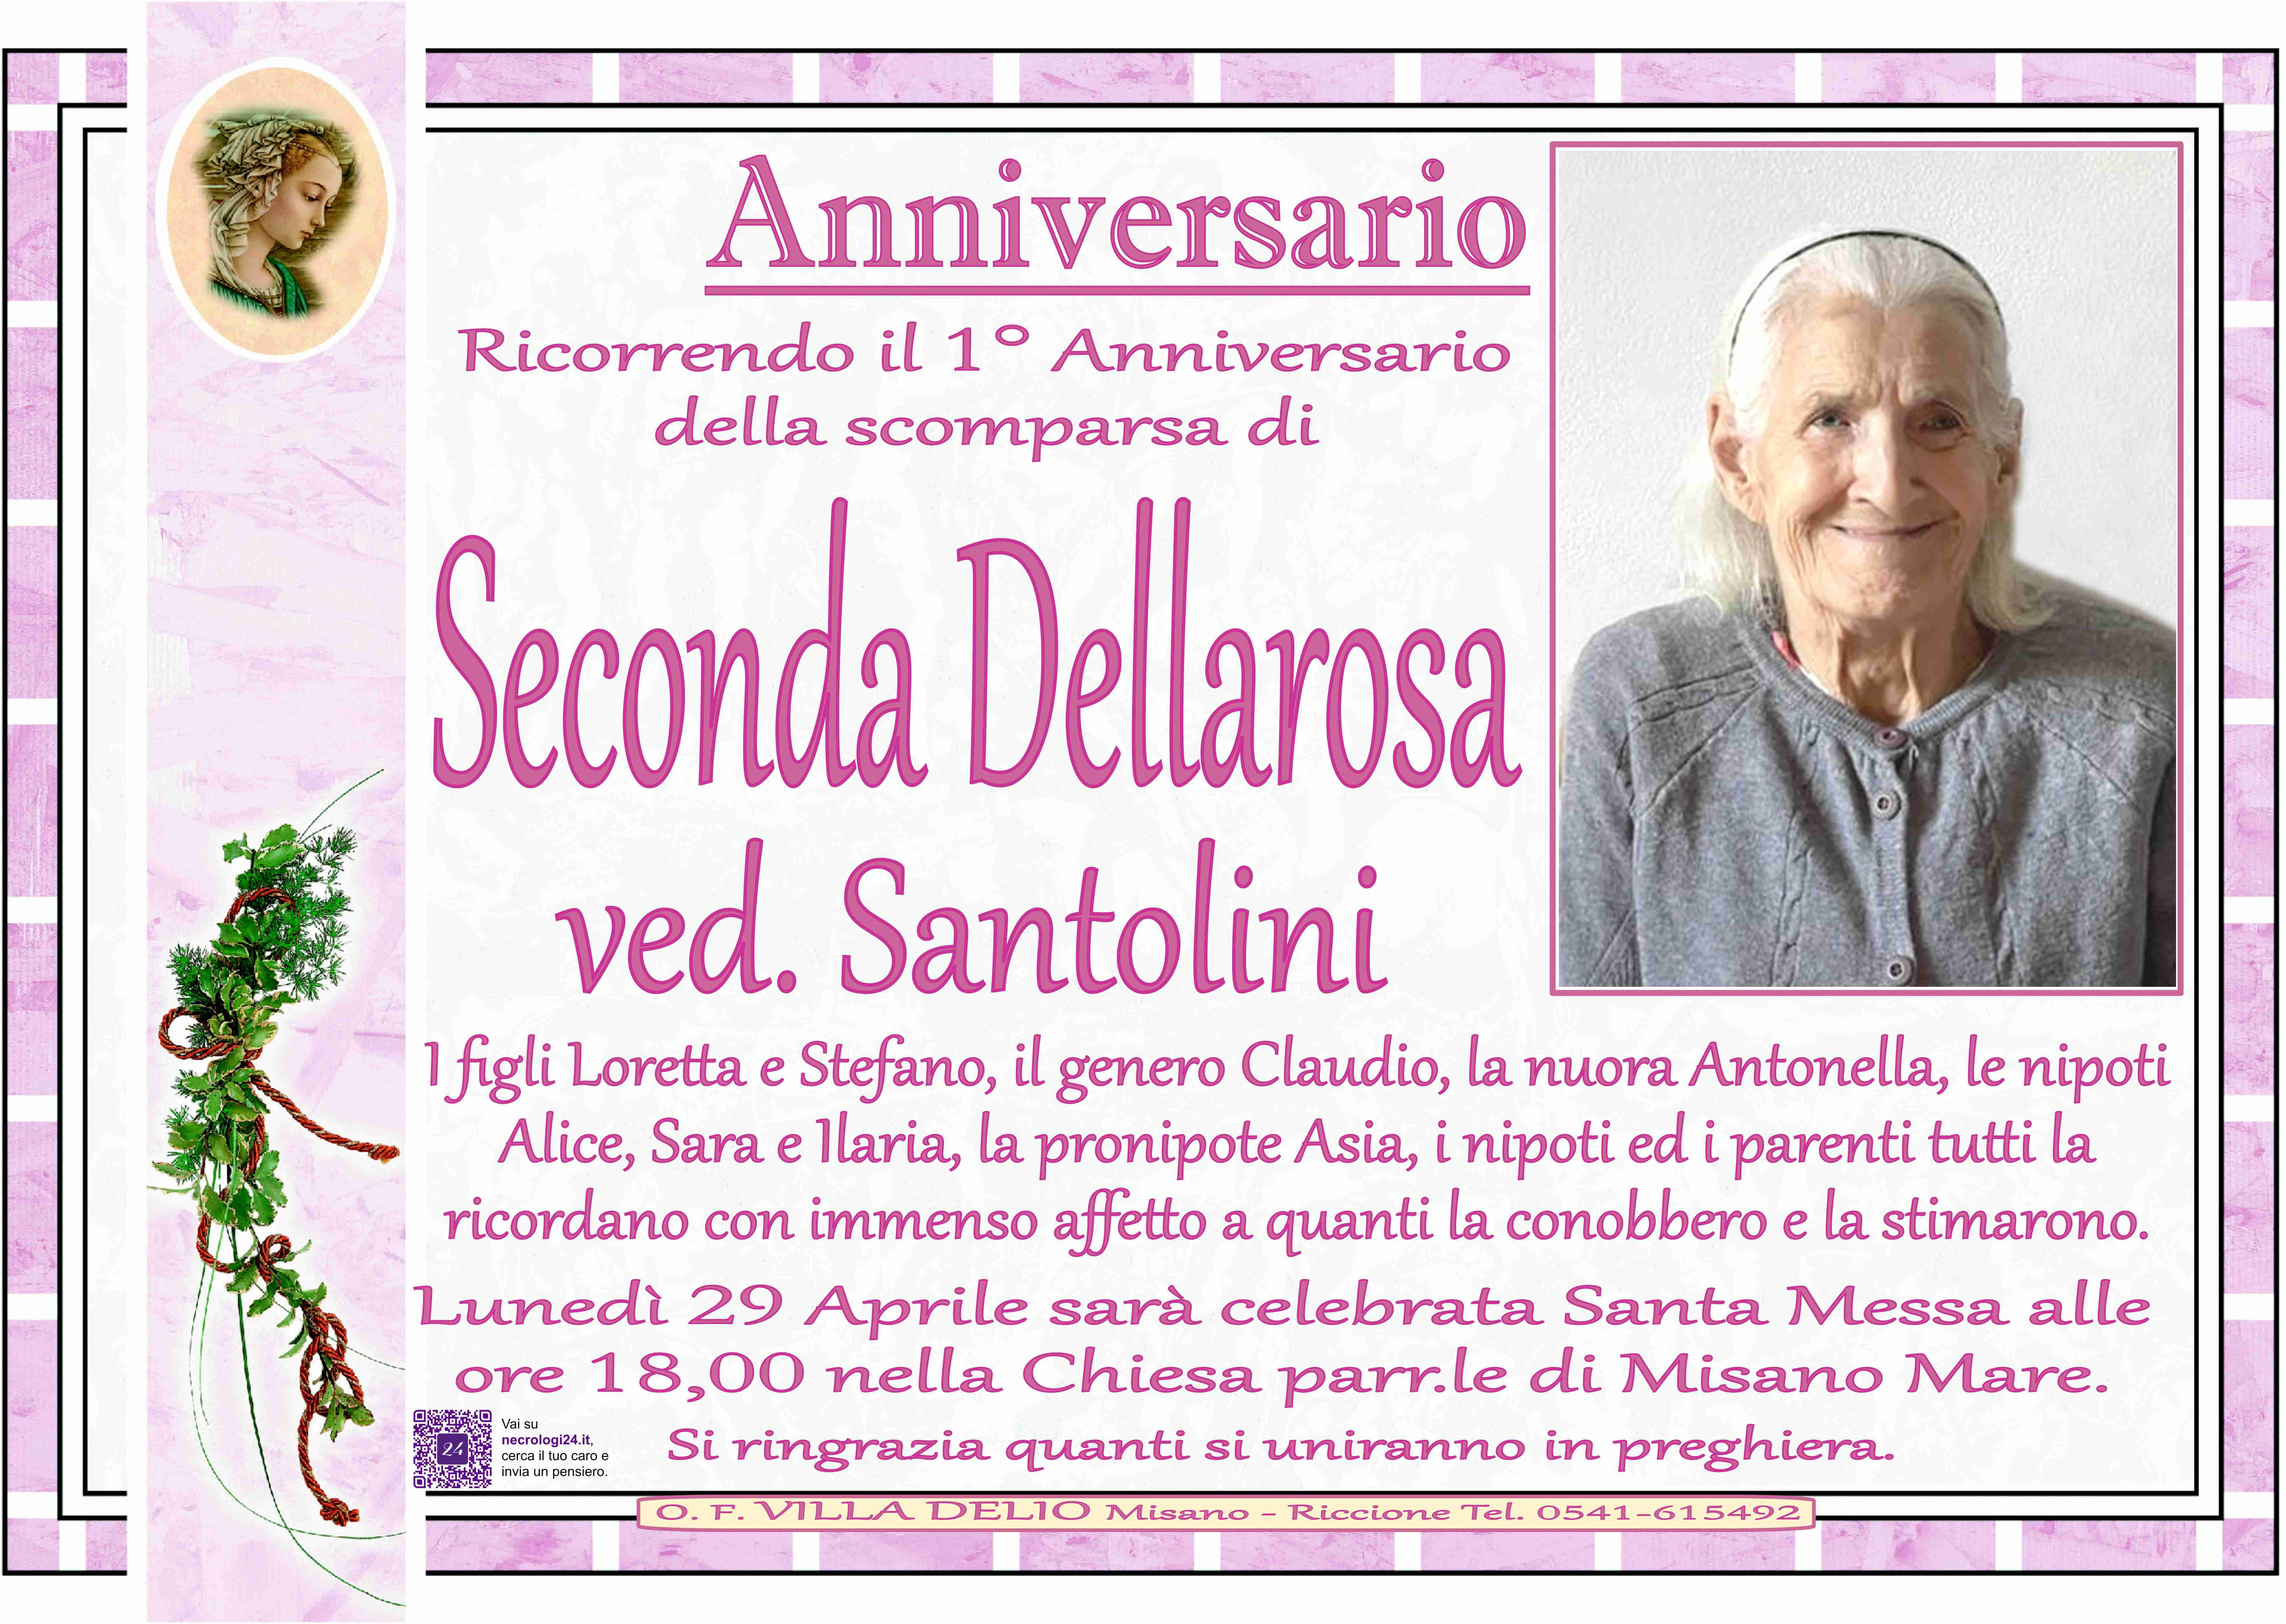 Seconda Dellarosa ved. Santolini